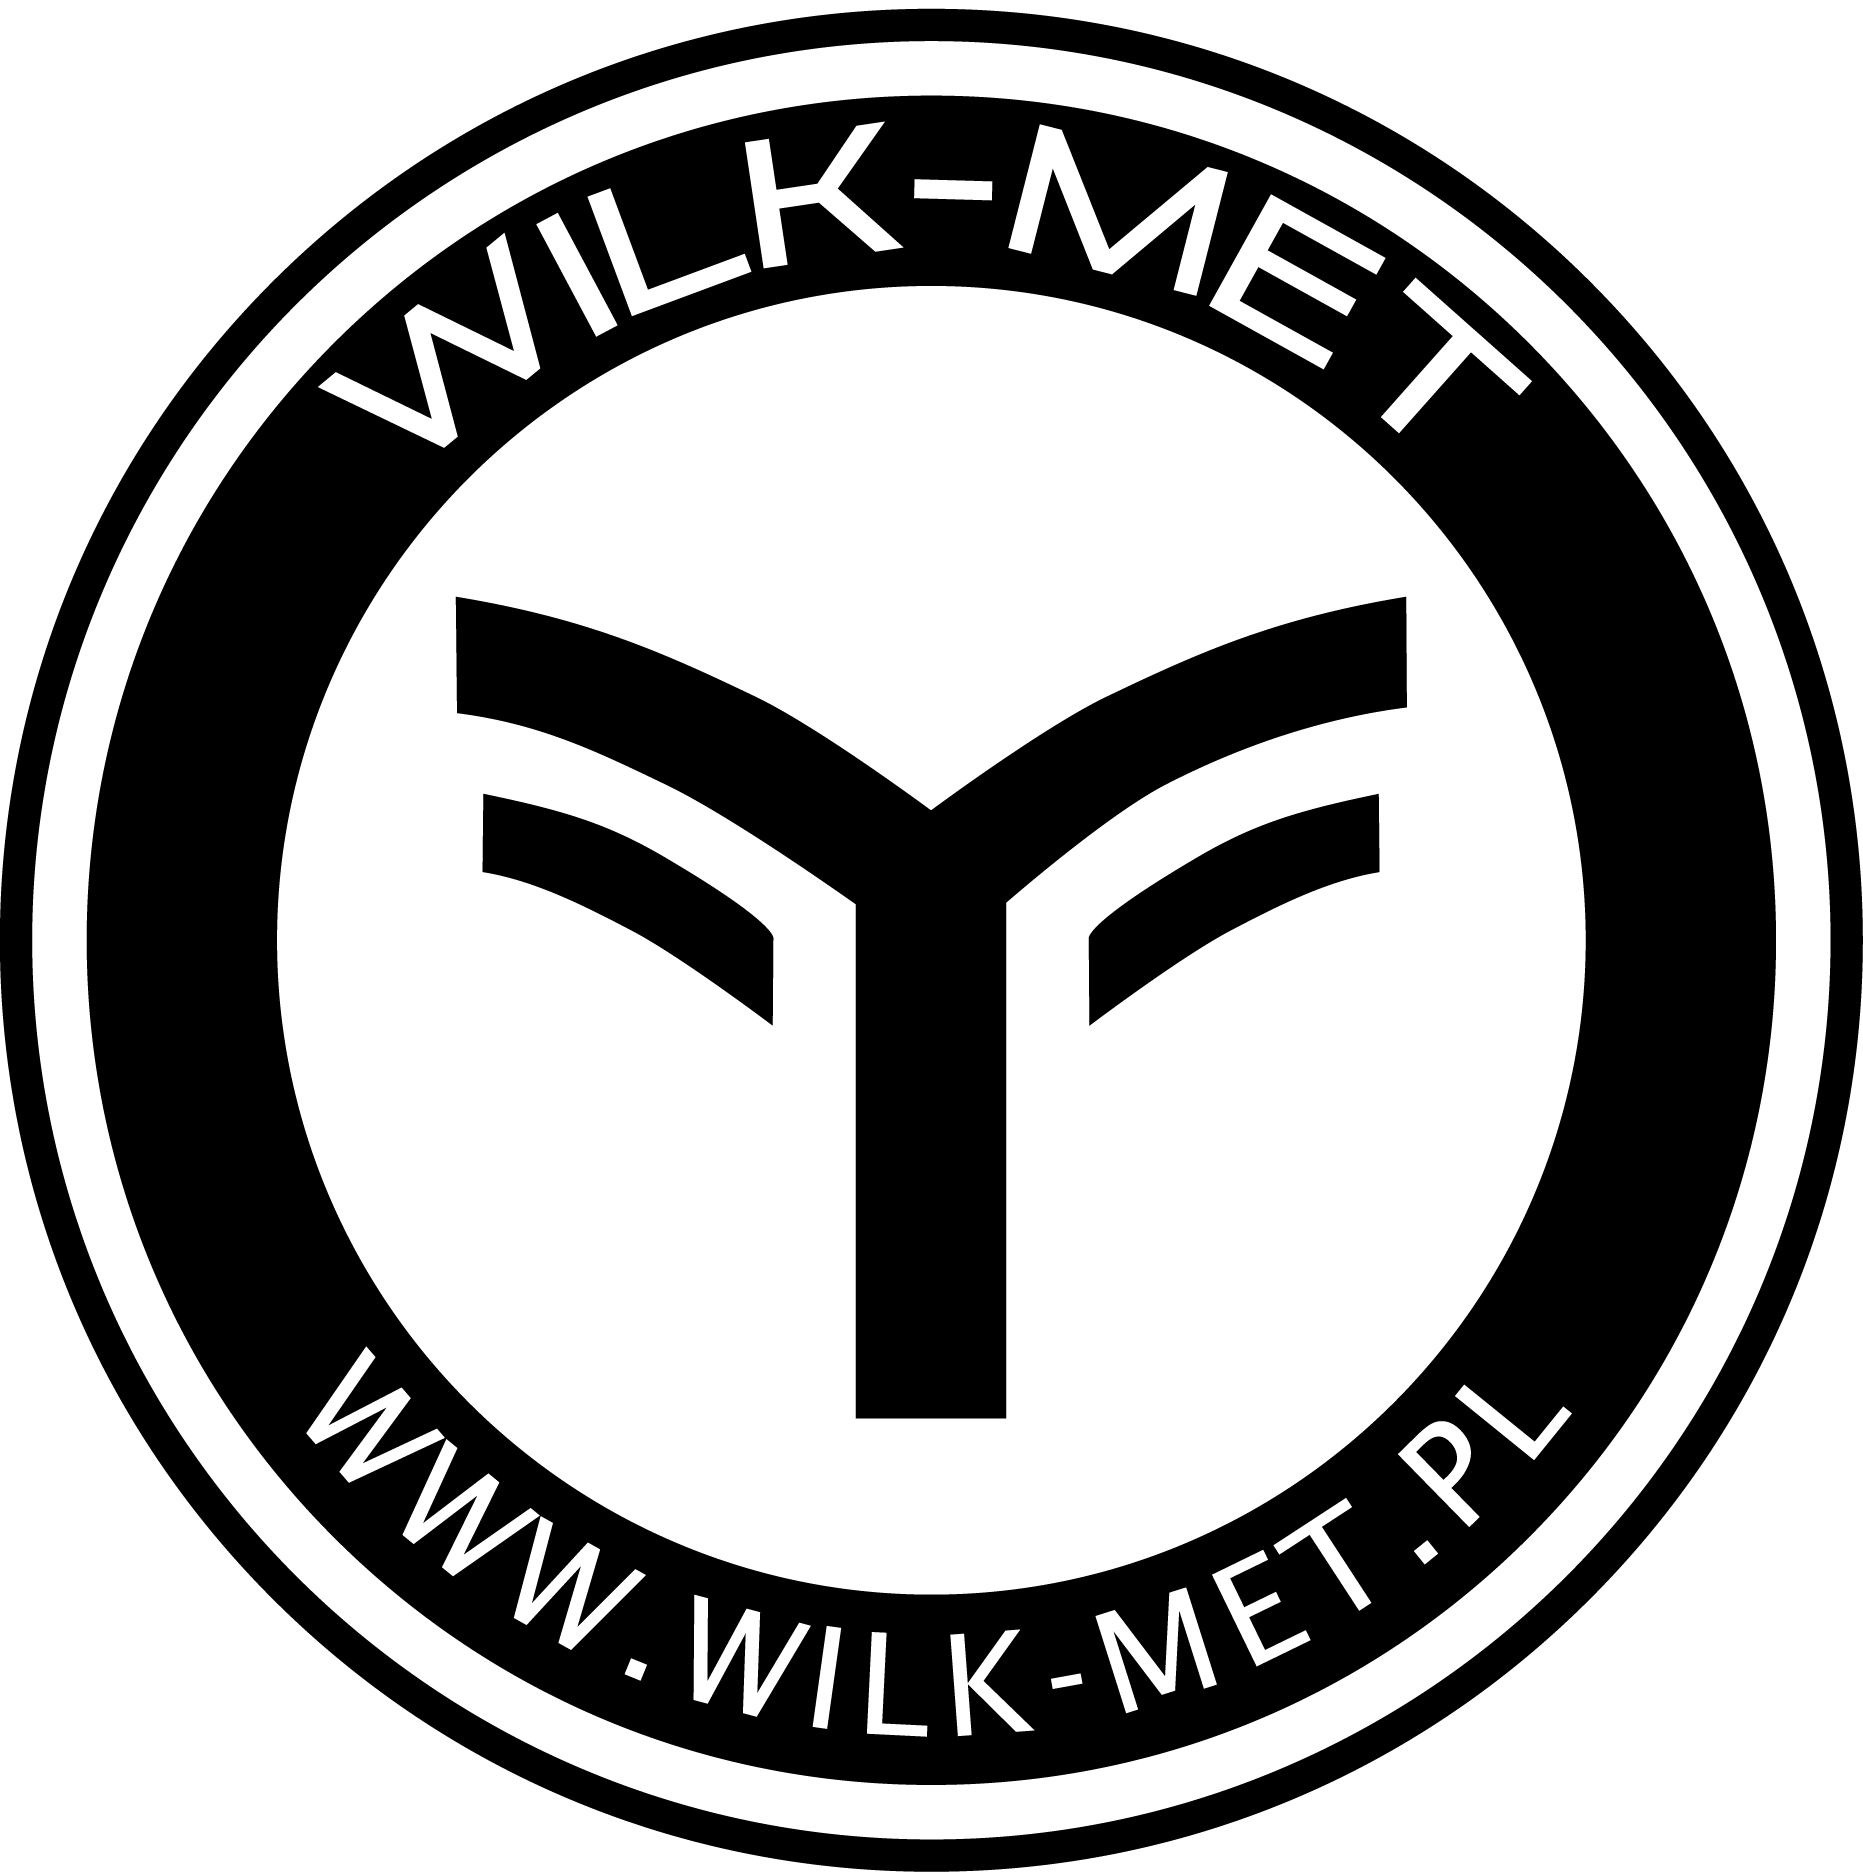 Wilk-Met